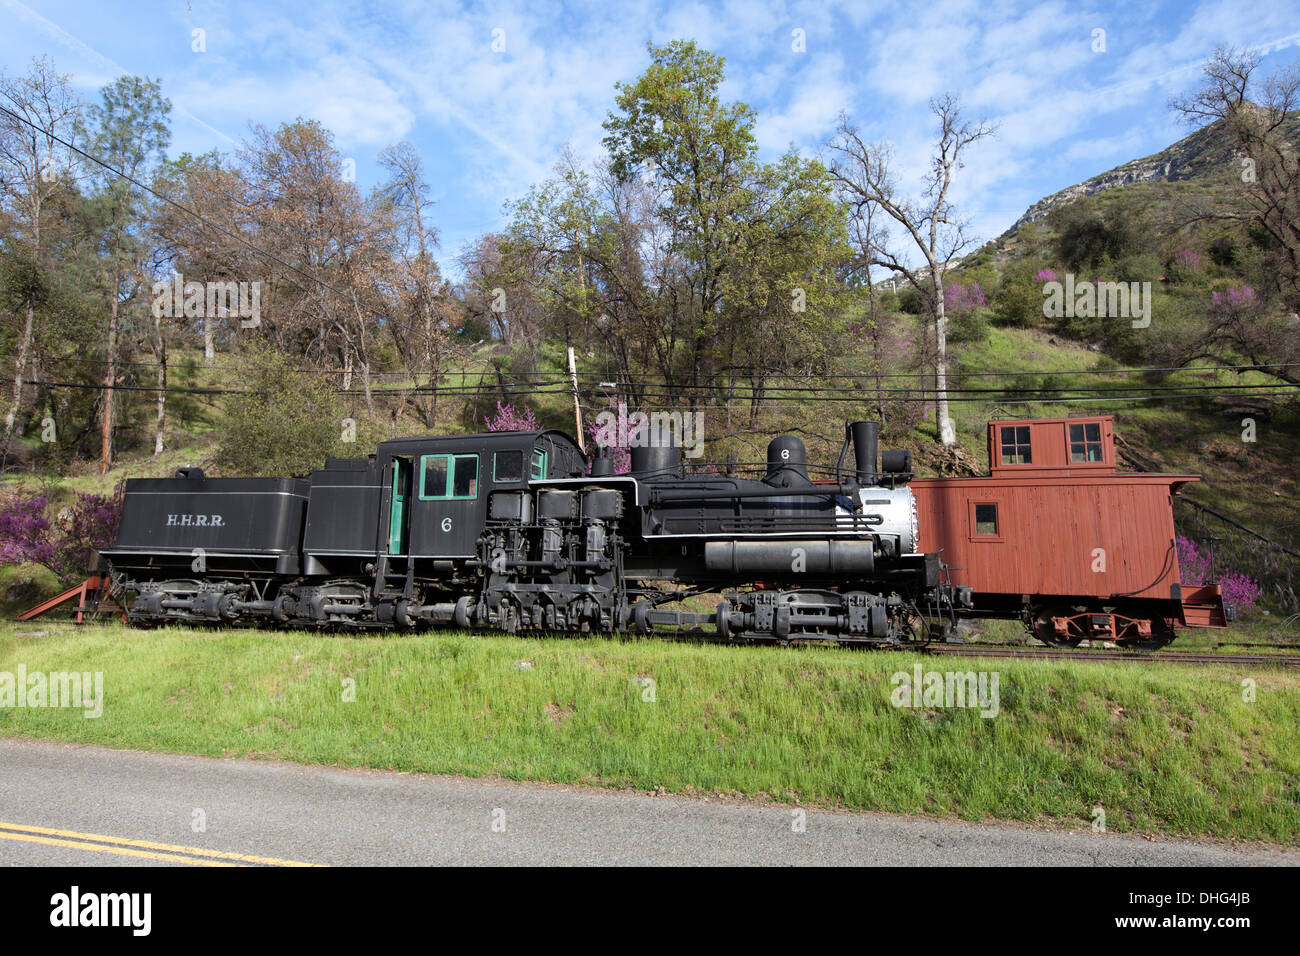 Shay locomotive No. 6 & Freight Caboose No. 15, El Portal Transportation Museum, Foresta Road, El Portal, California, USA. Stock Photo